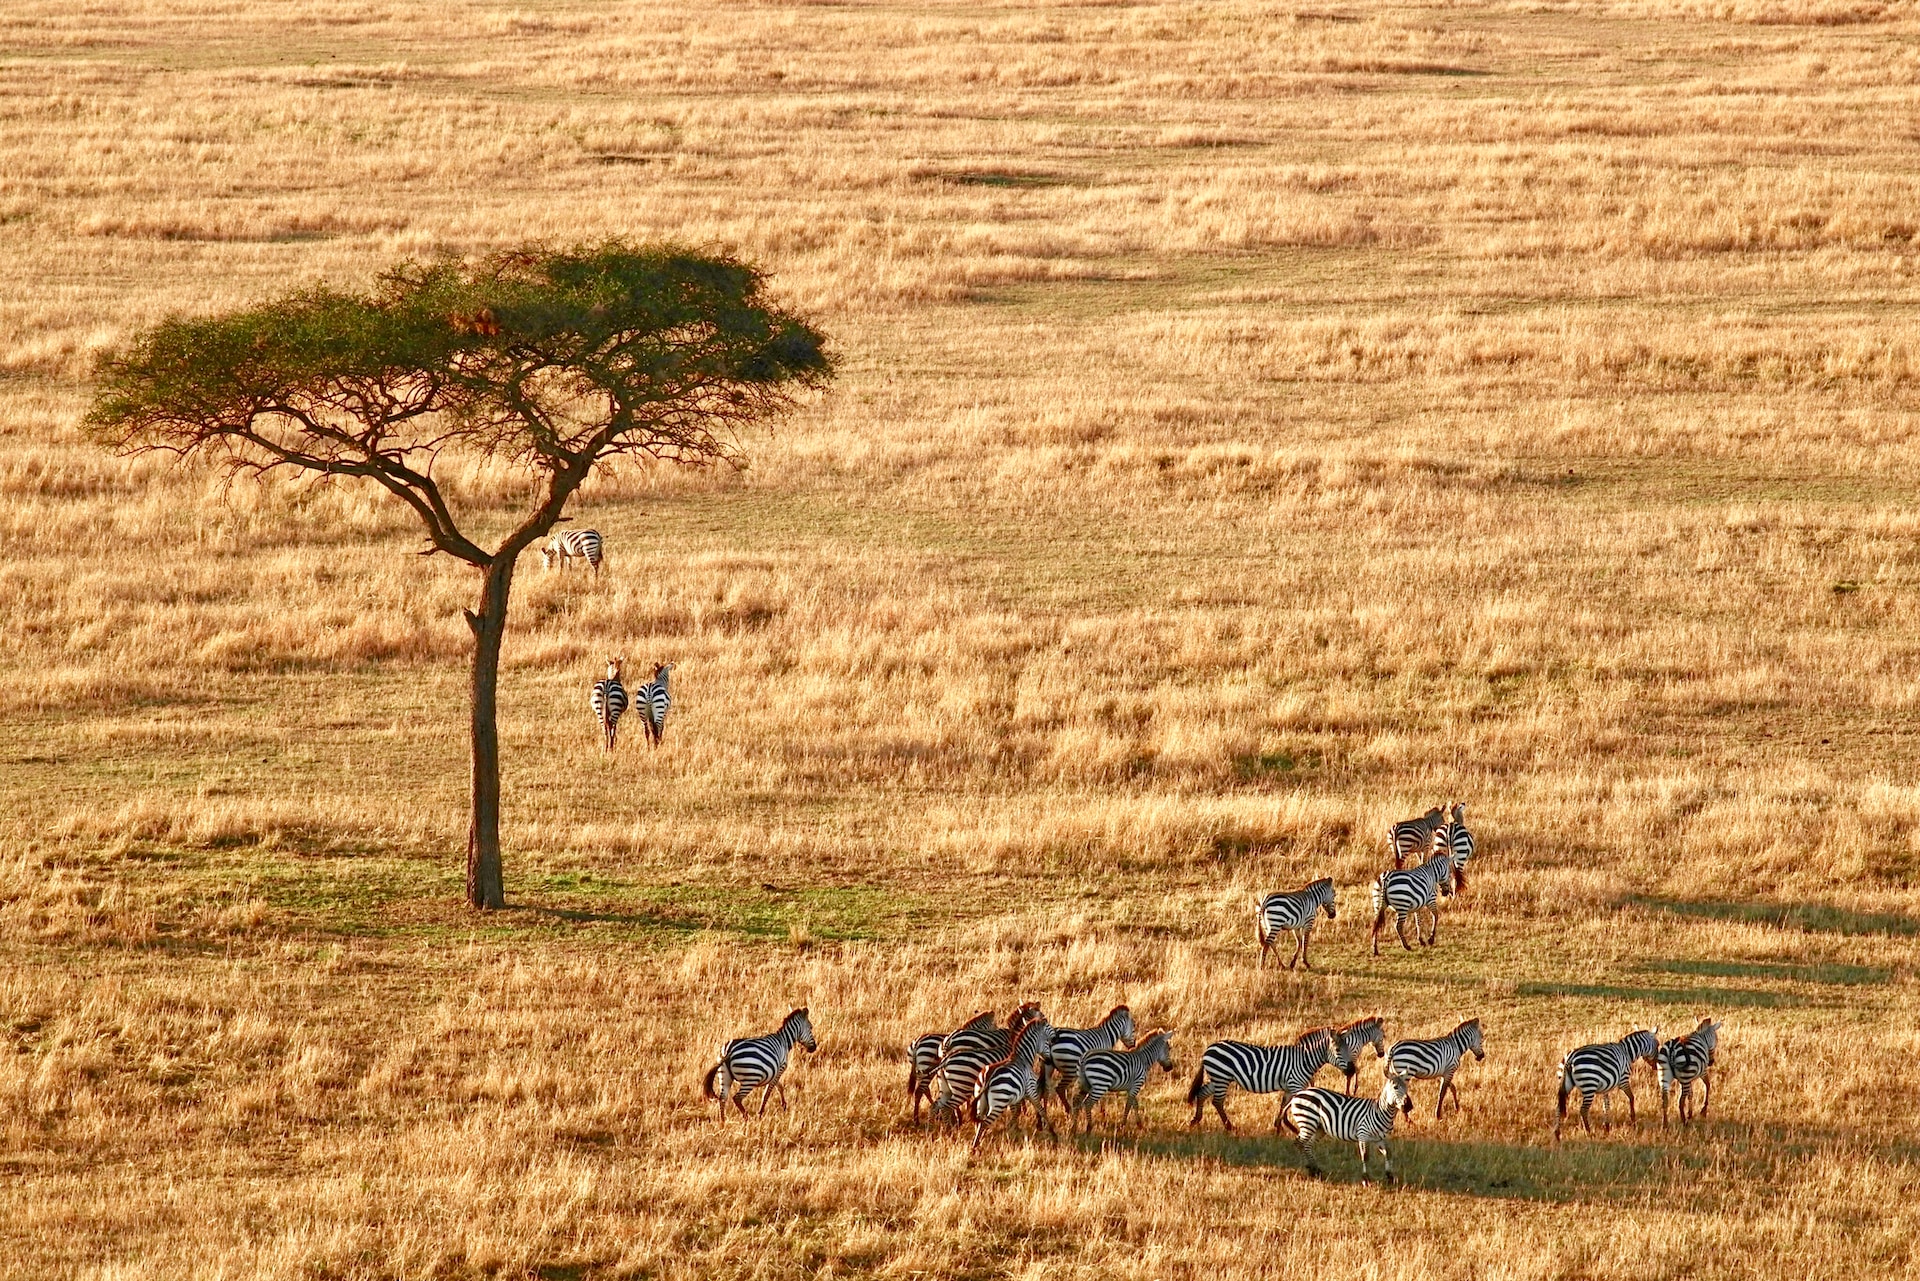 Kenya & Tanzania Group Joining Safari (10 Days ) From $1,500 PP